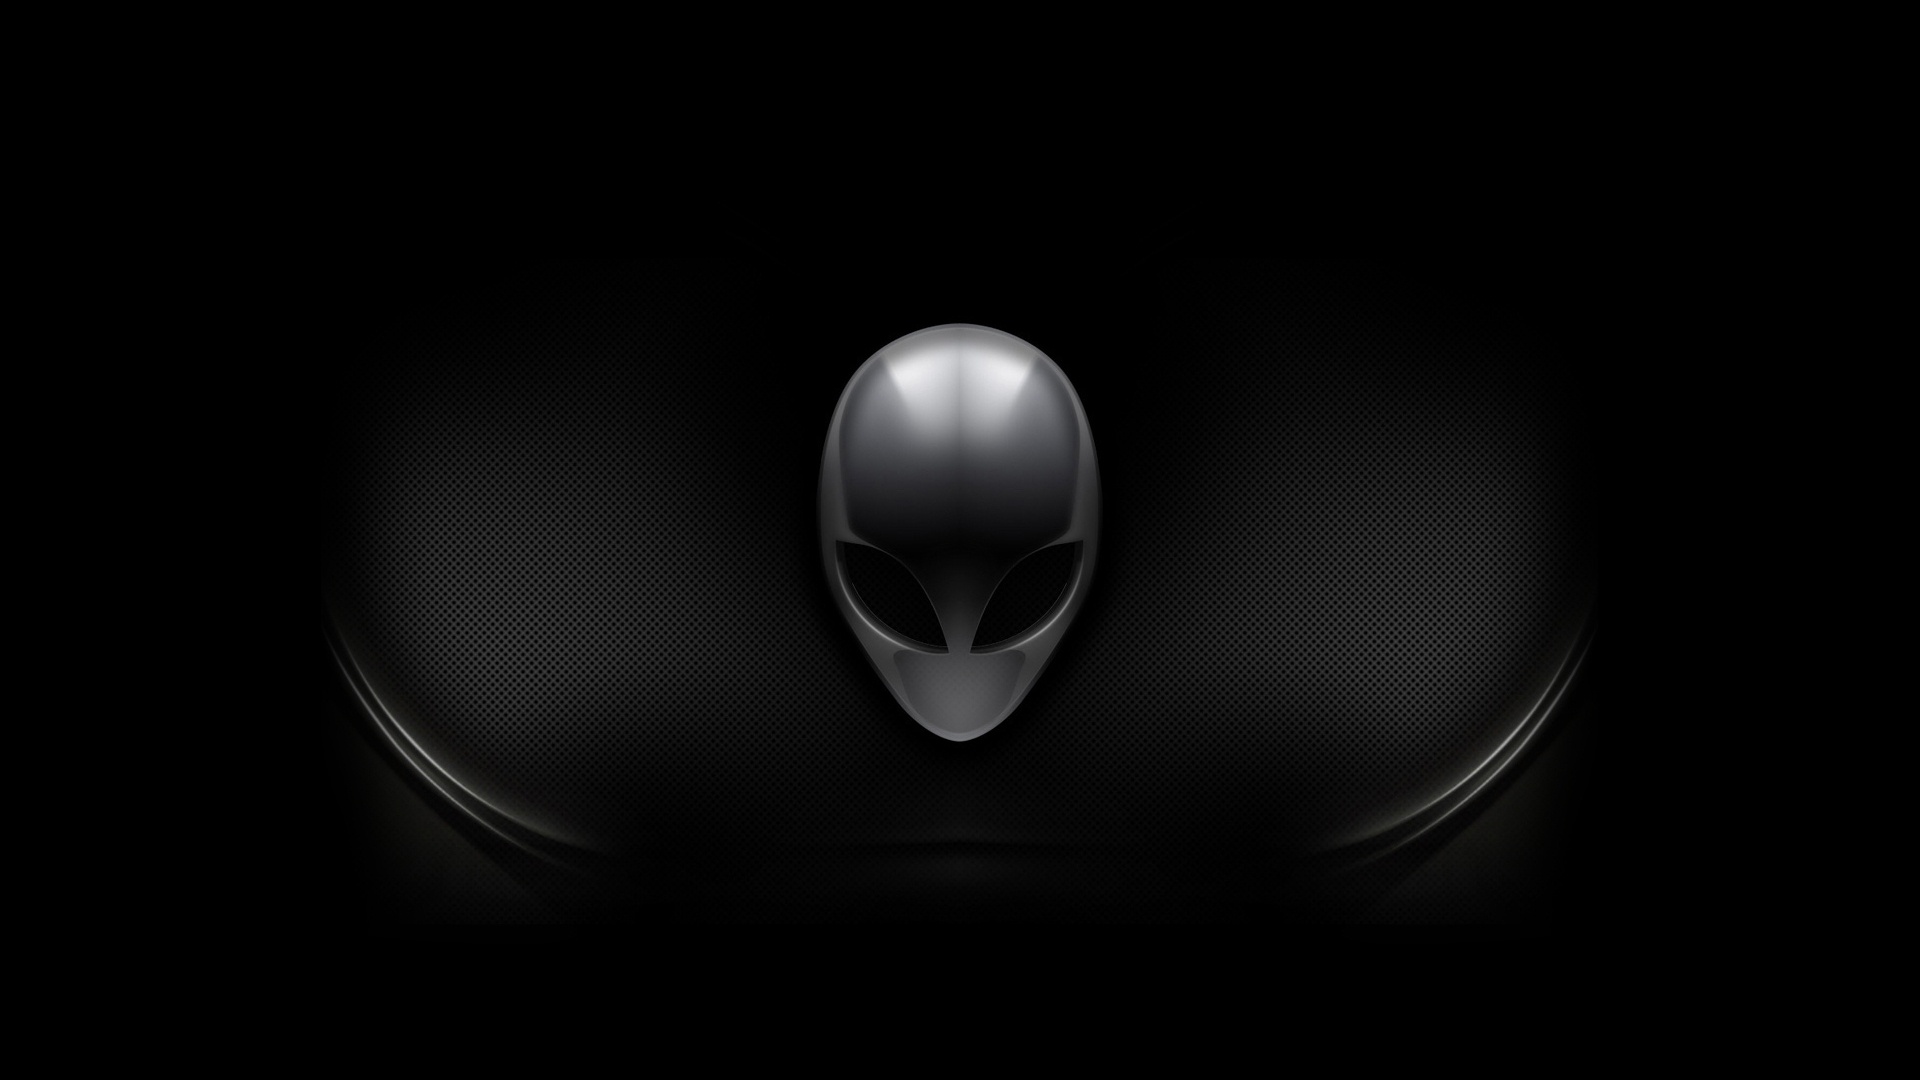 31+] Alienware Logo HD Wallpapers - WallpaperSafari